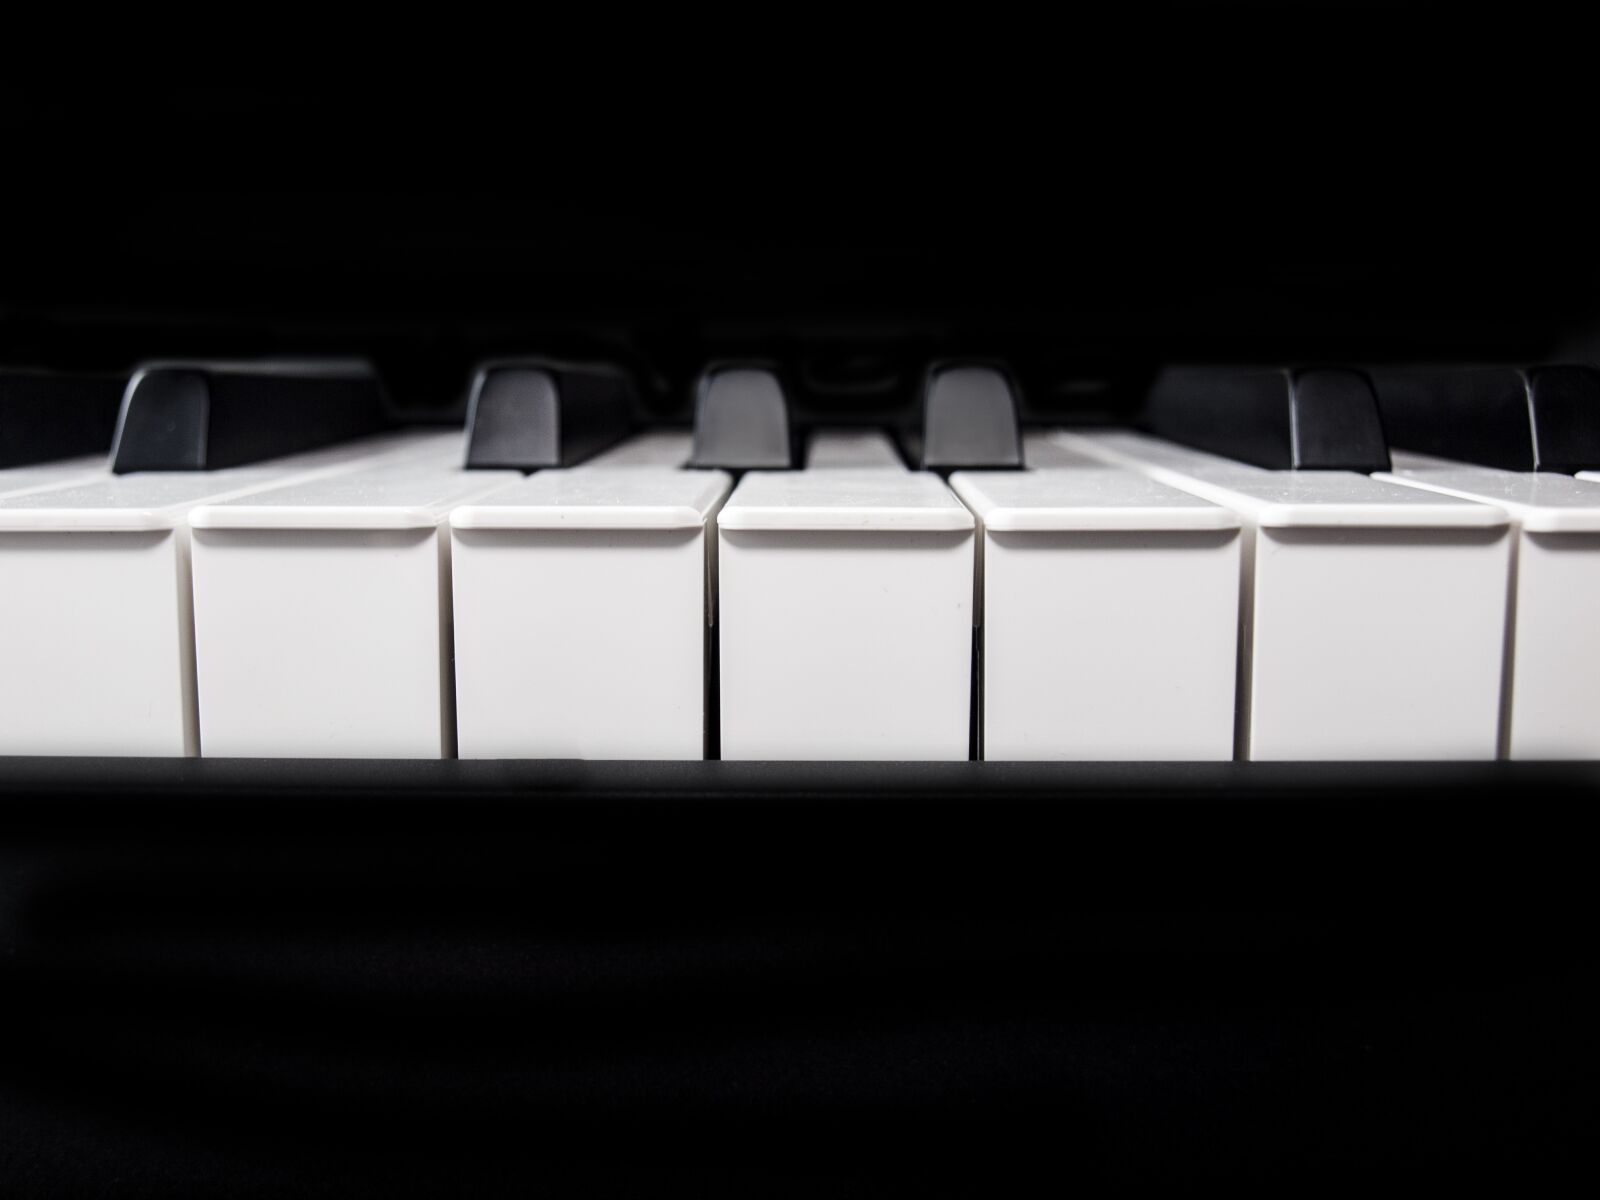 Olympus E-620 (EVOLT E-620) sample photo. Piano, keys, keyboard photography